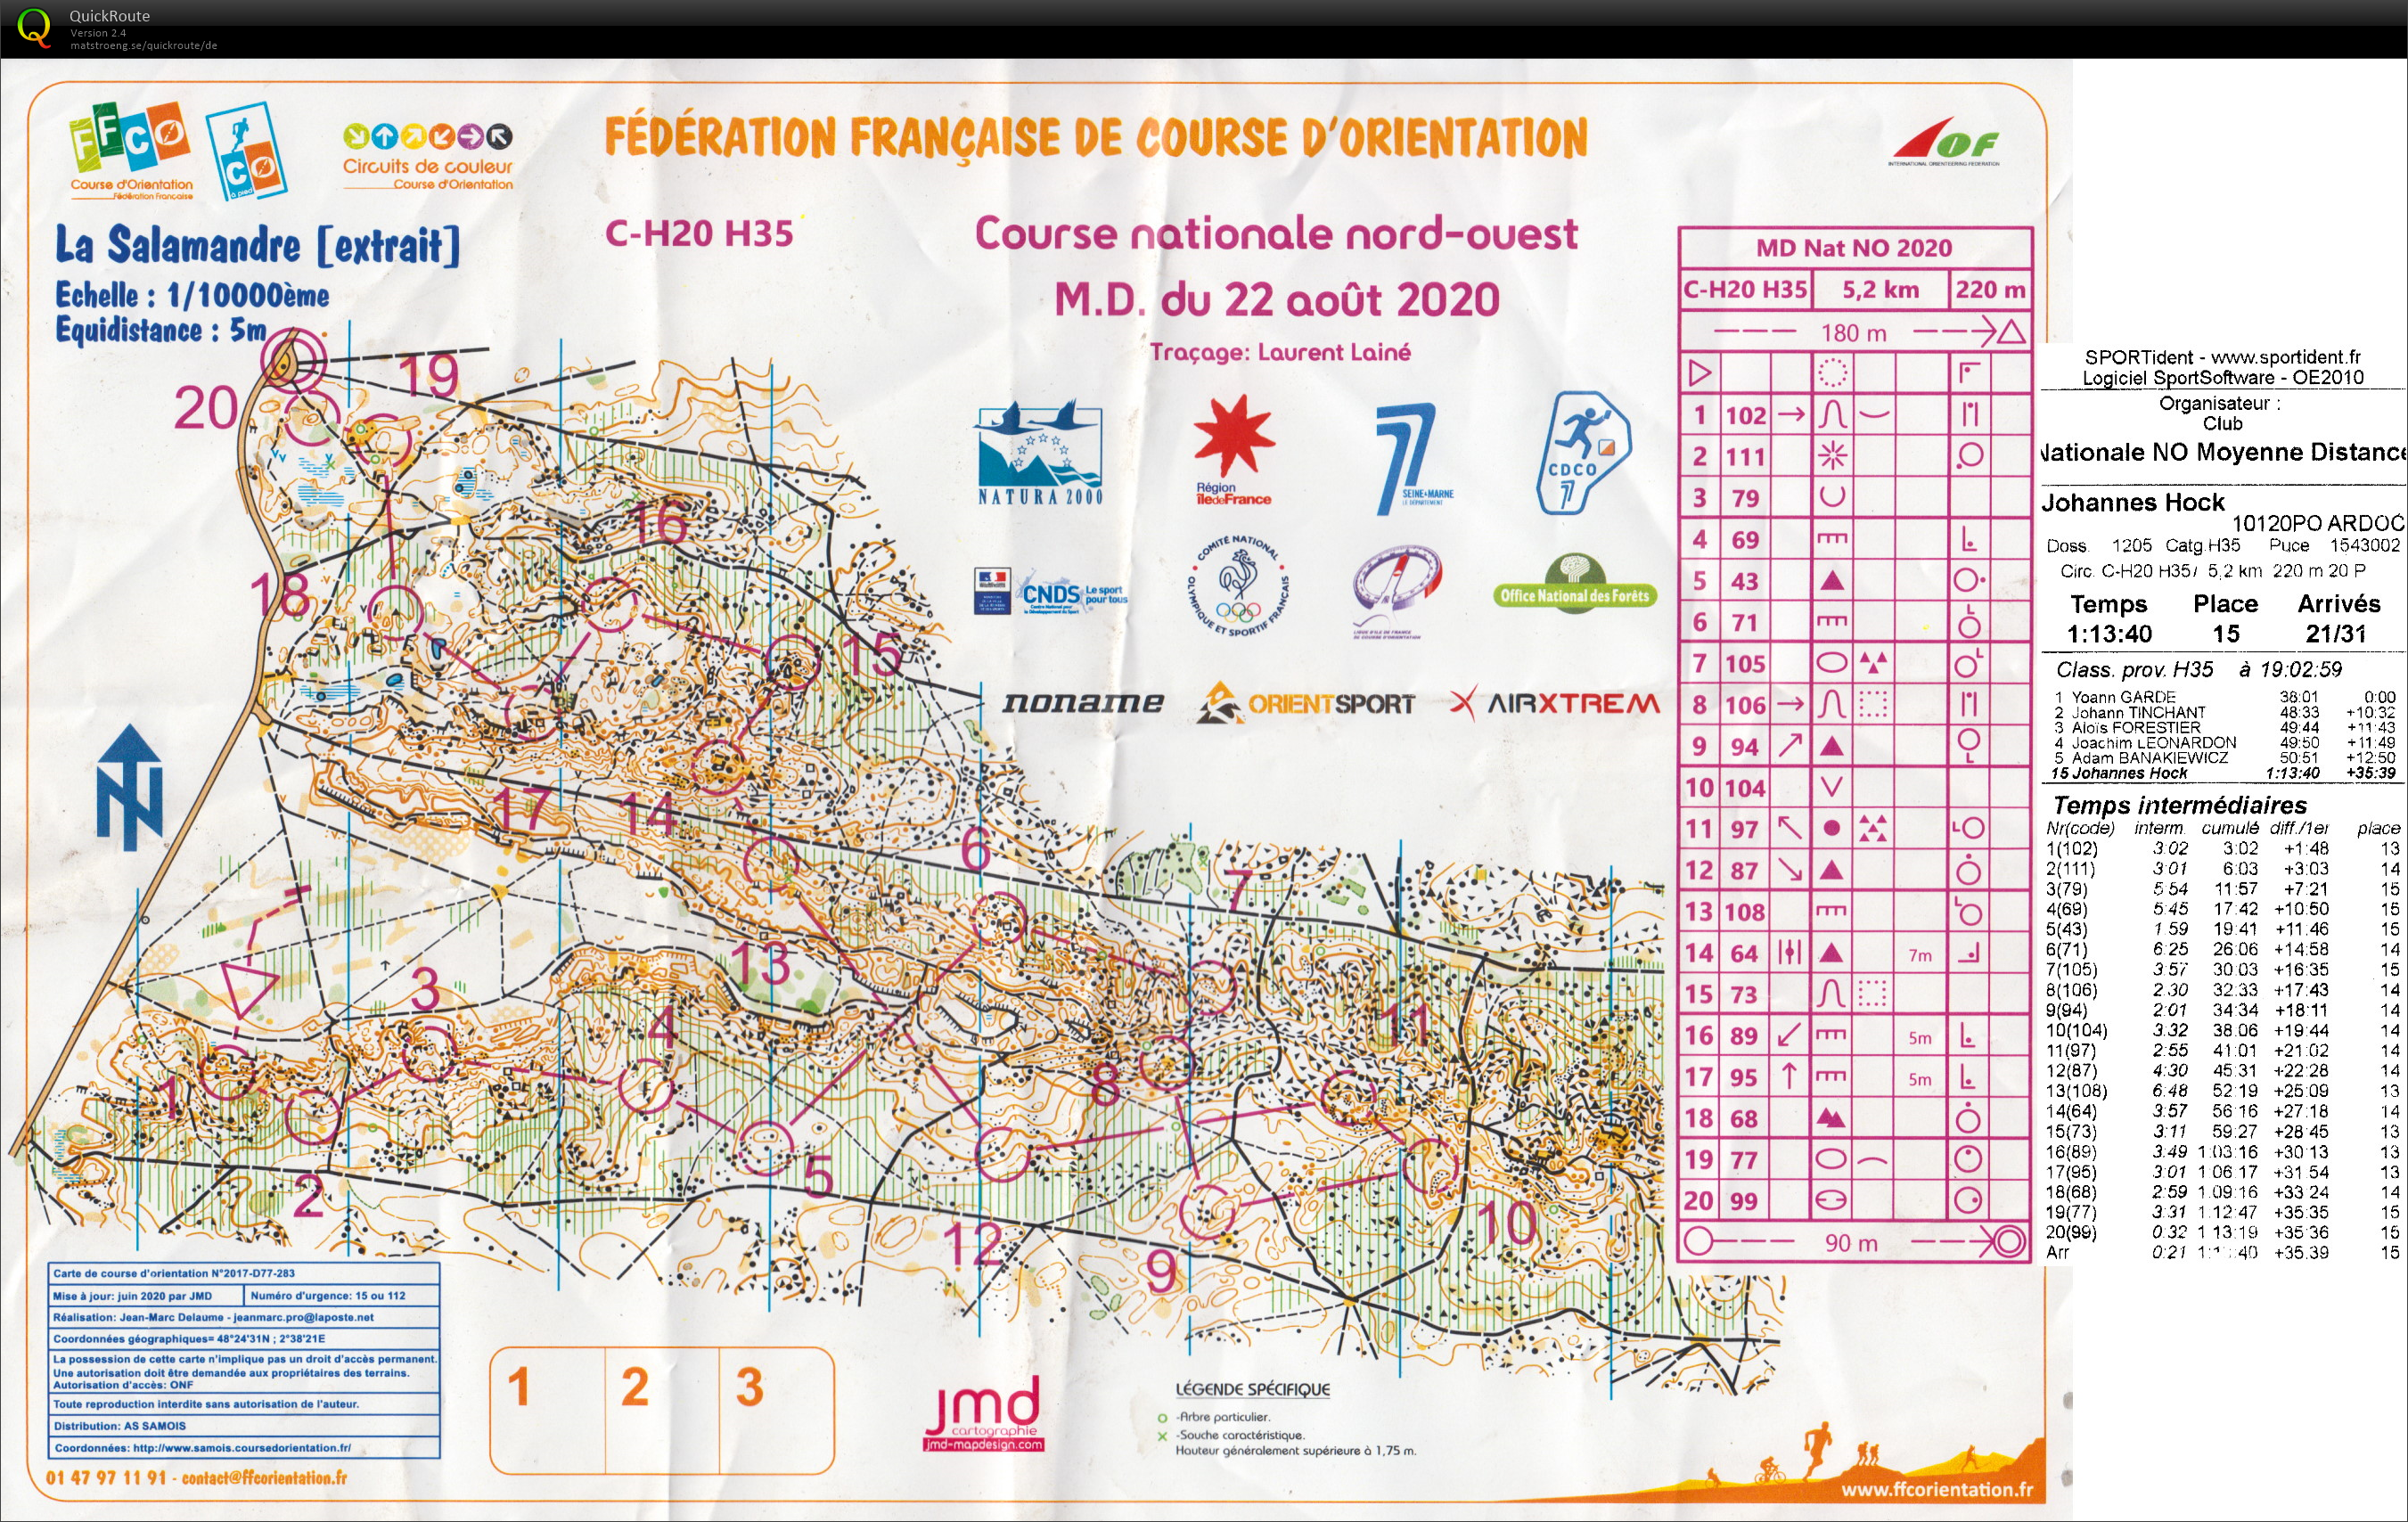 Course nationale M.D. Fontainebleau (22.08.2020)